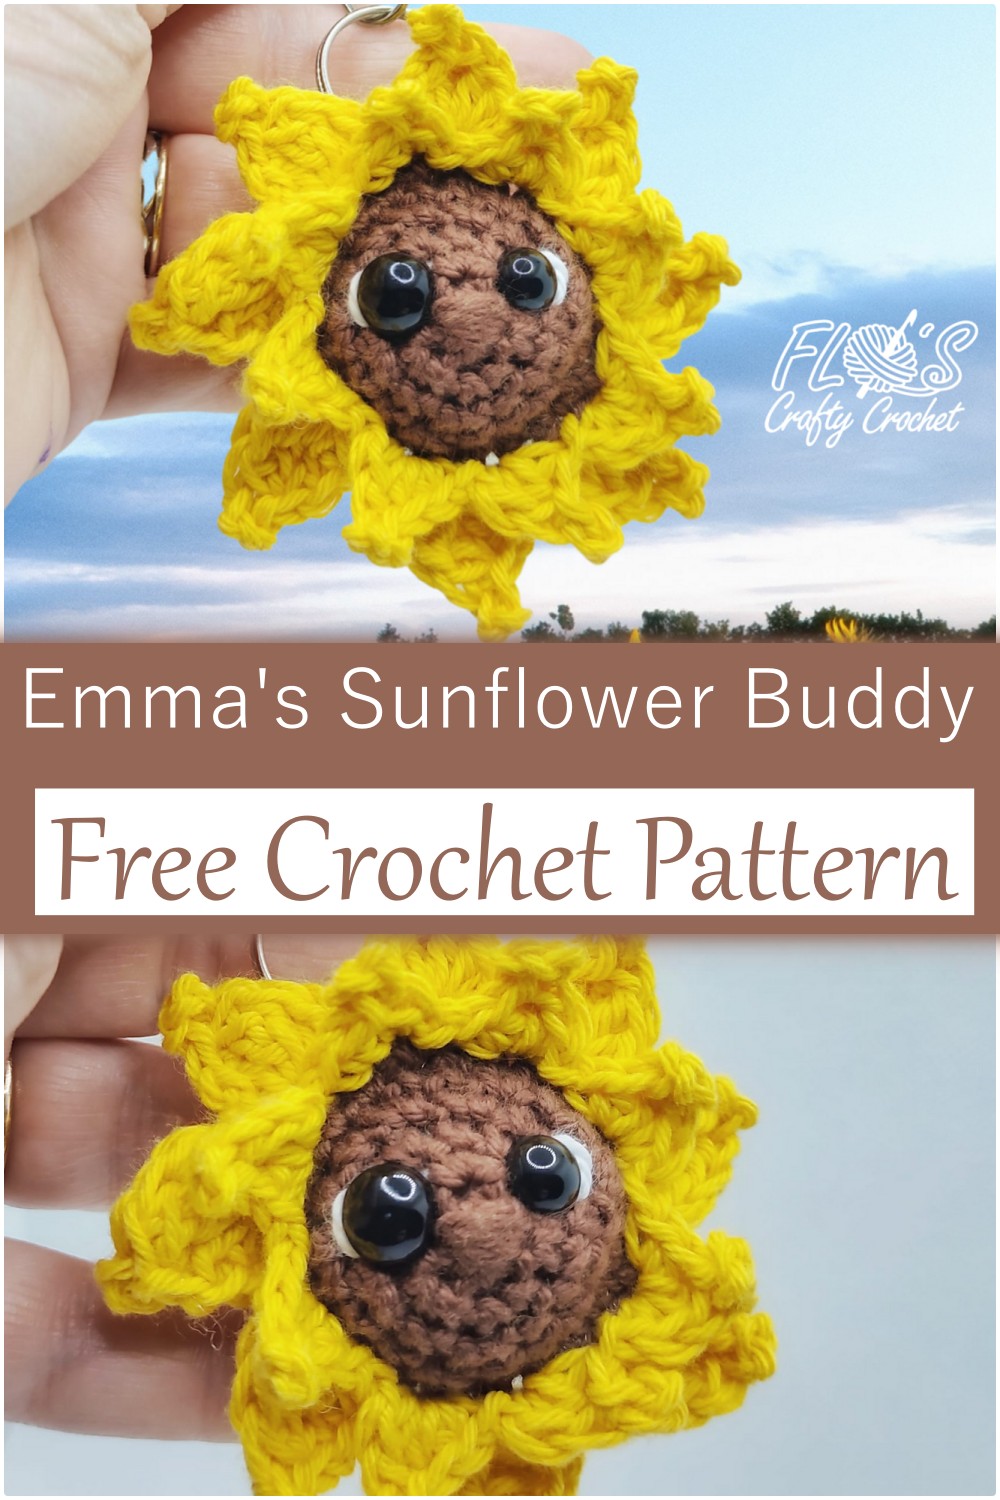 Crochet Sunflower Pattern Free